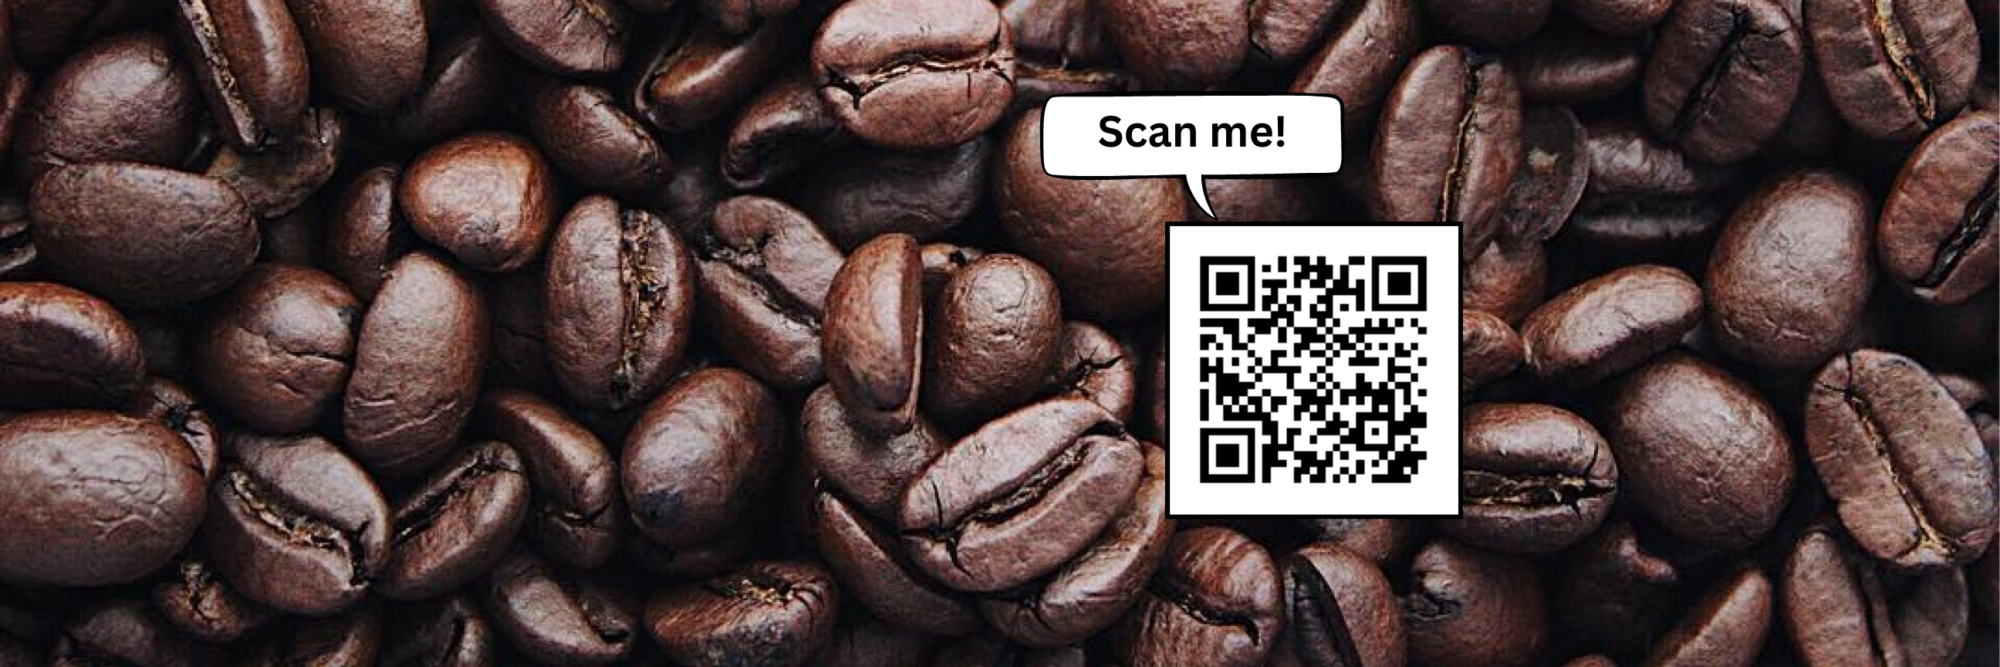 Das Foto zeigt Kaffeebohnen. Im Bild ist ein QR-Code, darüber steht "Scan me!". Am Bildrand steht "RUANDAKAFFEE", darüber das Logo des Partnerschaftsvereins Kaiserslautern e.V.